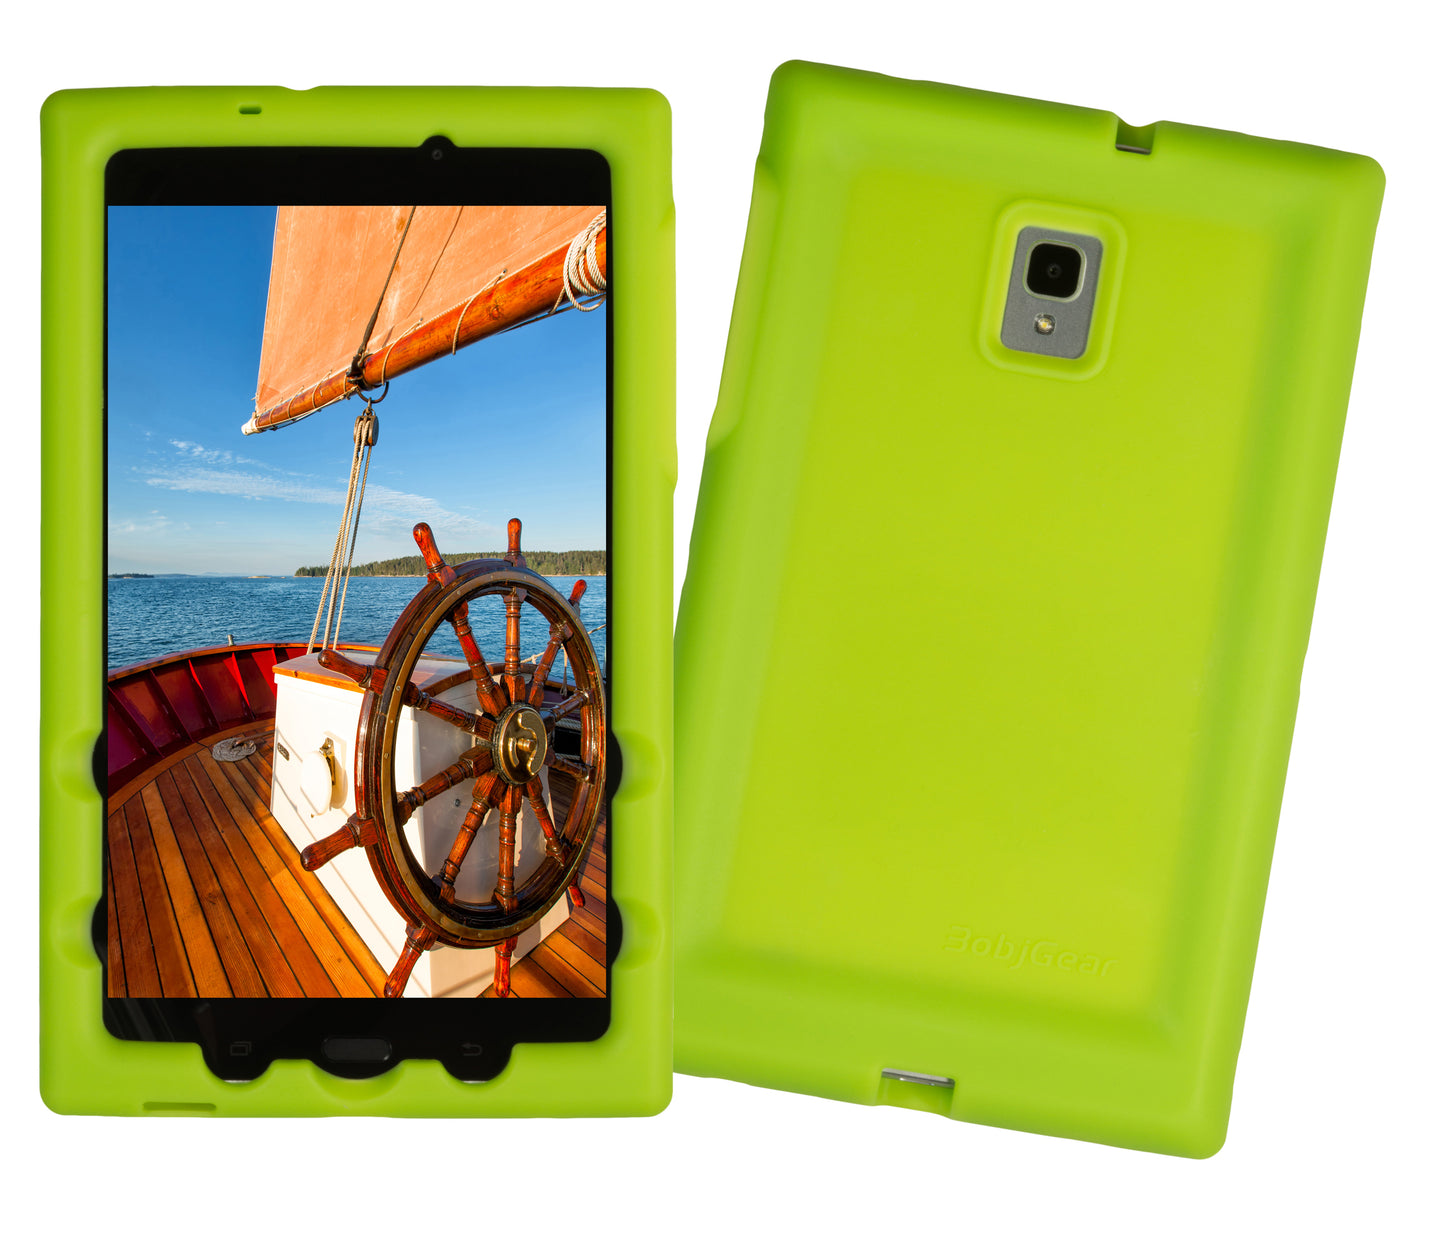 Bobj Rugged Tablet Case for Samsung Galaxy Tab A 8.0 (2017)  Model SM-T380 - Gotcha Green